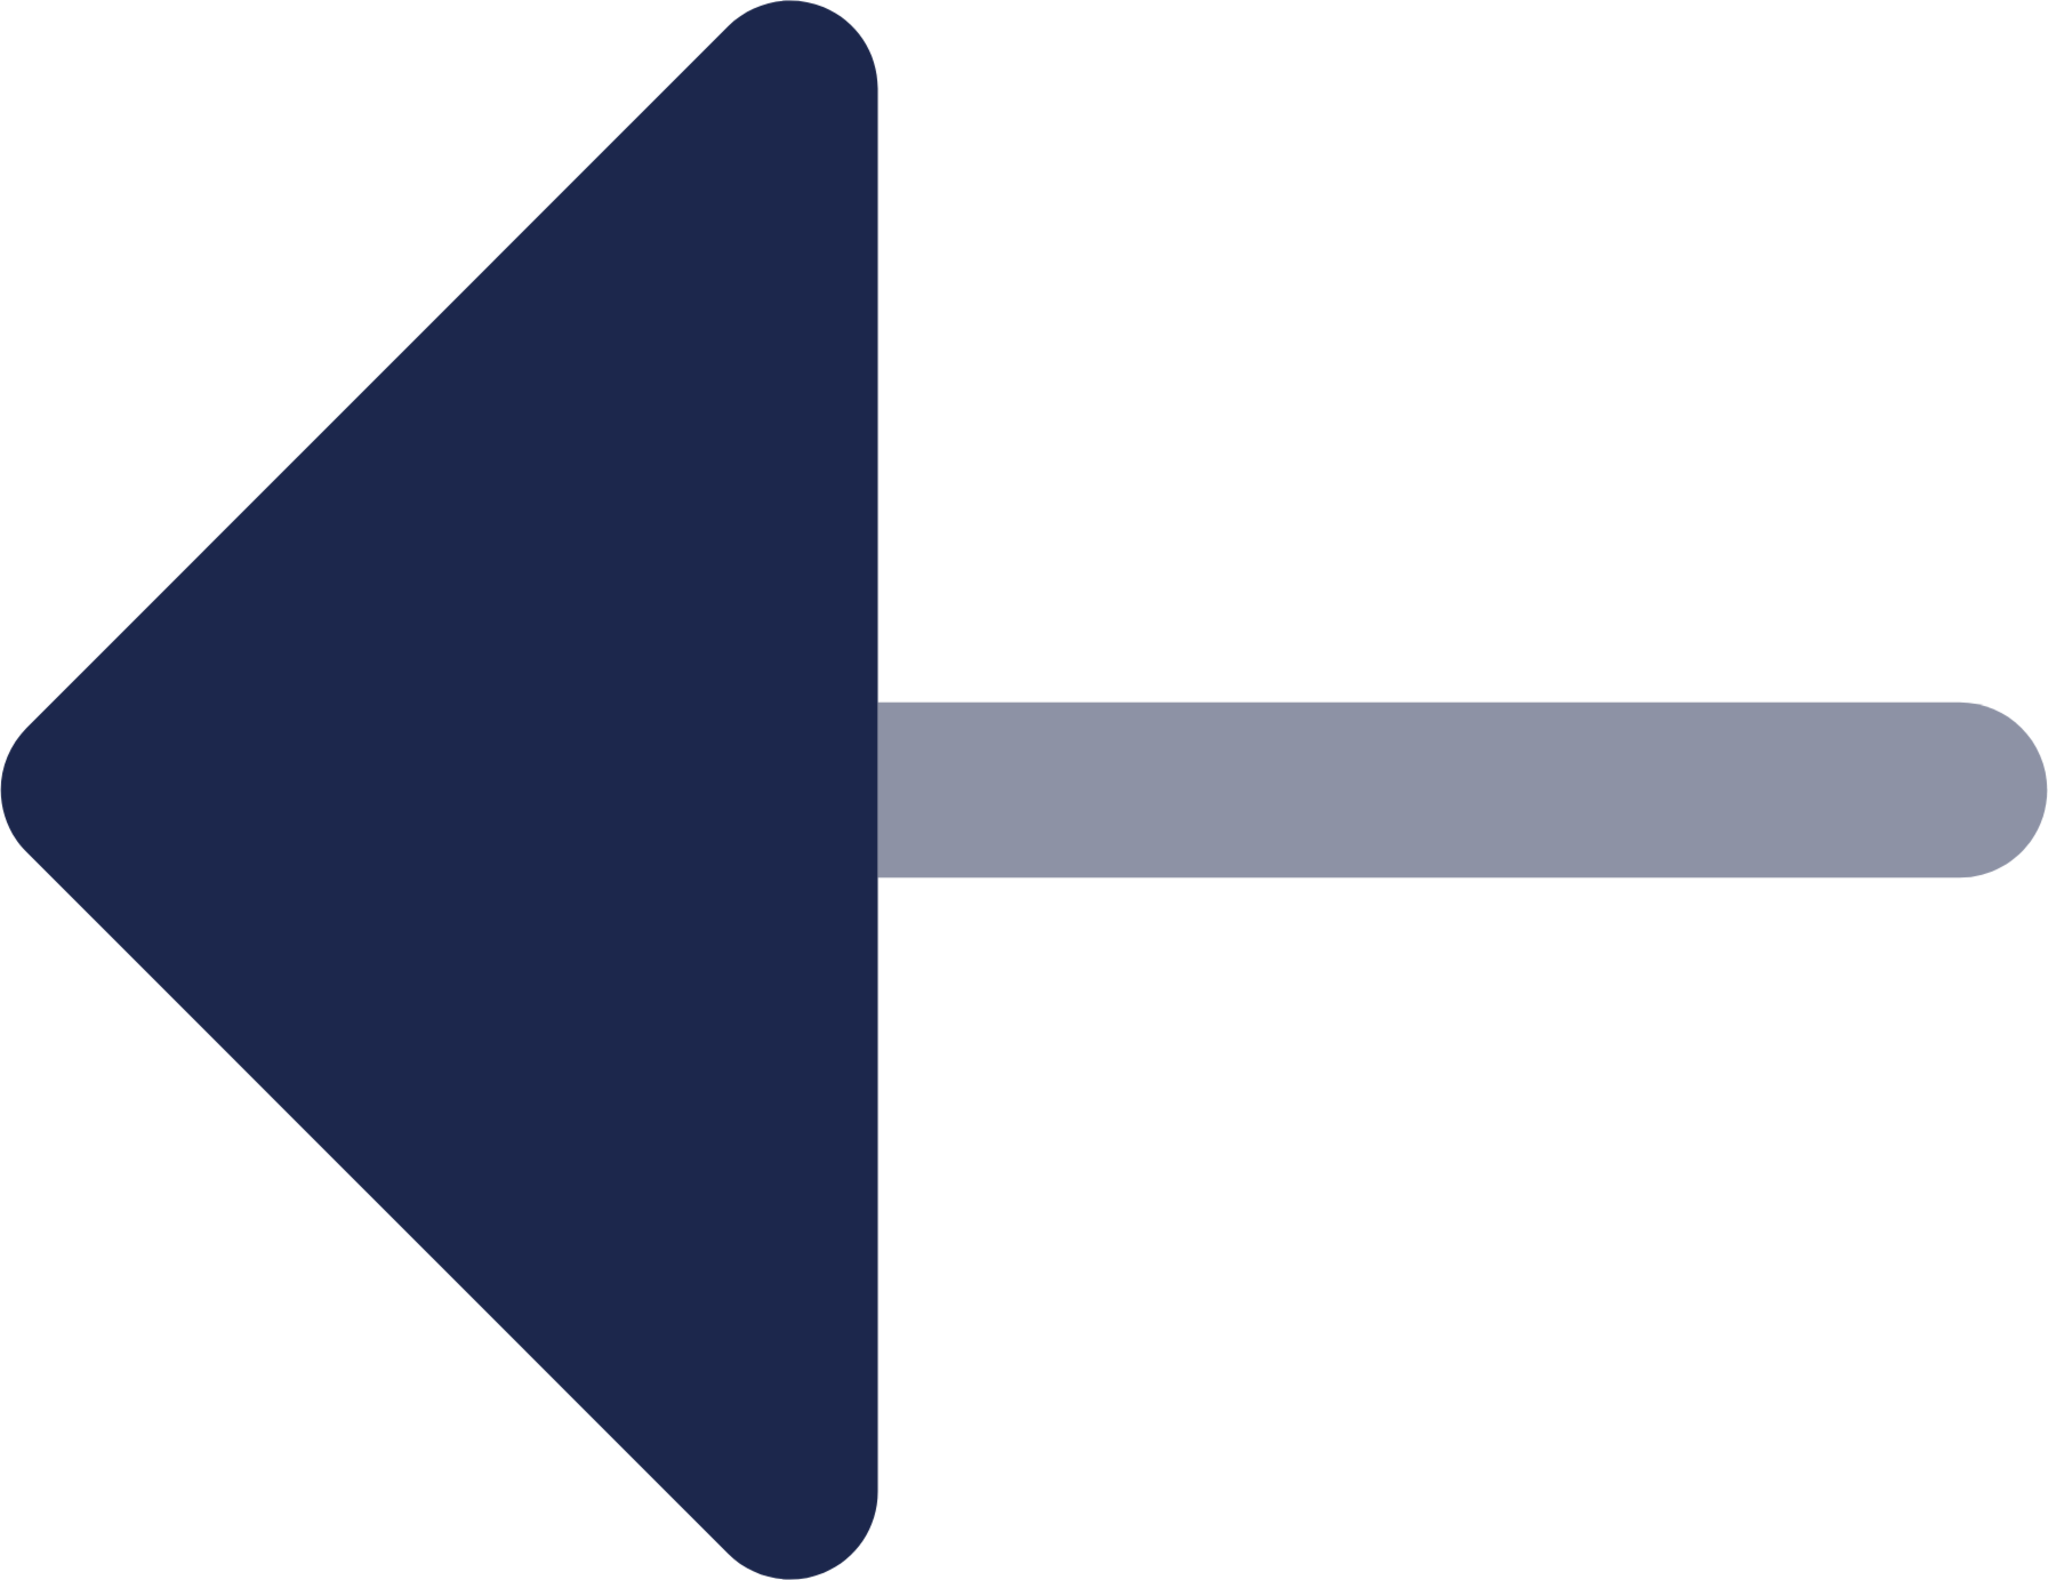 Arrow Left icon